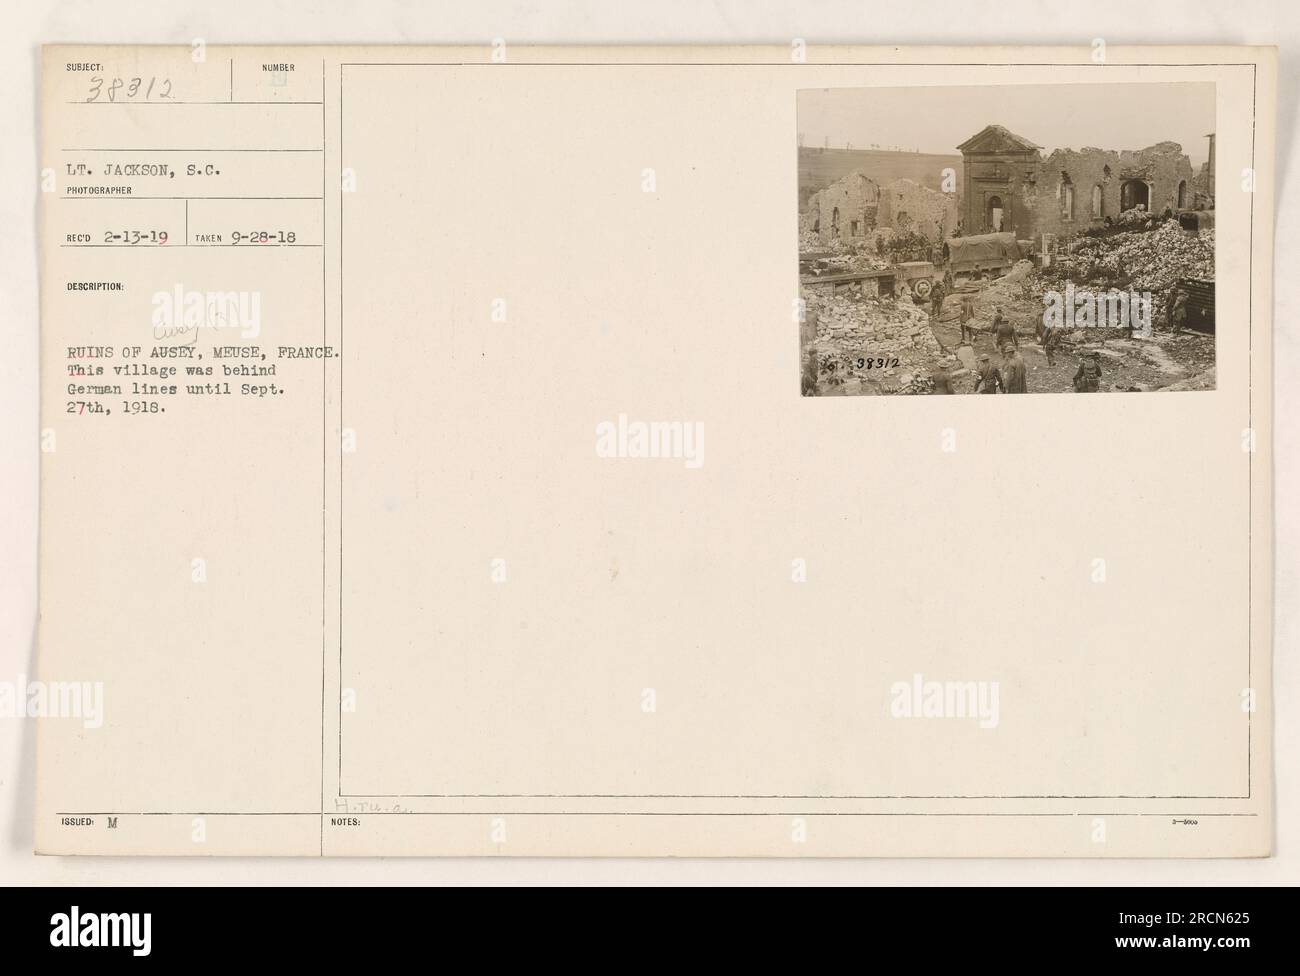 Photographie des ruines d'Ausey, Meuse, France prise le 28 septembre 1918 par le lieutenant Jackson, S.C. Ce village était situé derrière les lignes allemandes jusqu'au 27 septembre 1918. Le numéro de la photo est Curry (3) et elle a été publiée avec les notes 383/2. Banque D'Images